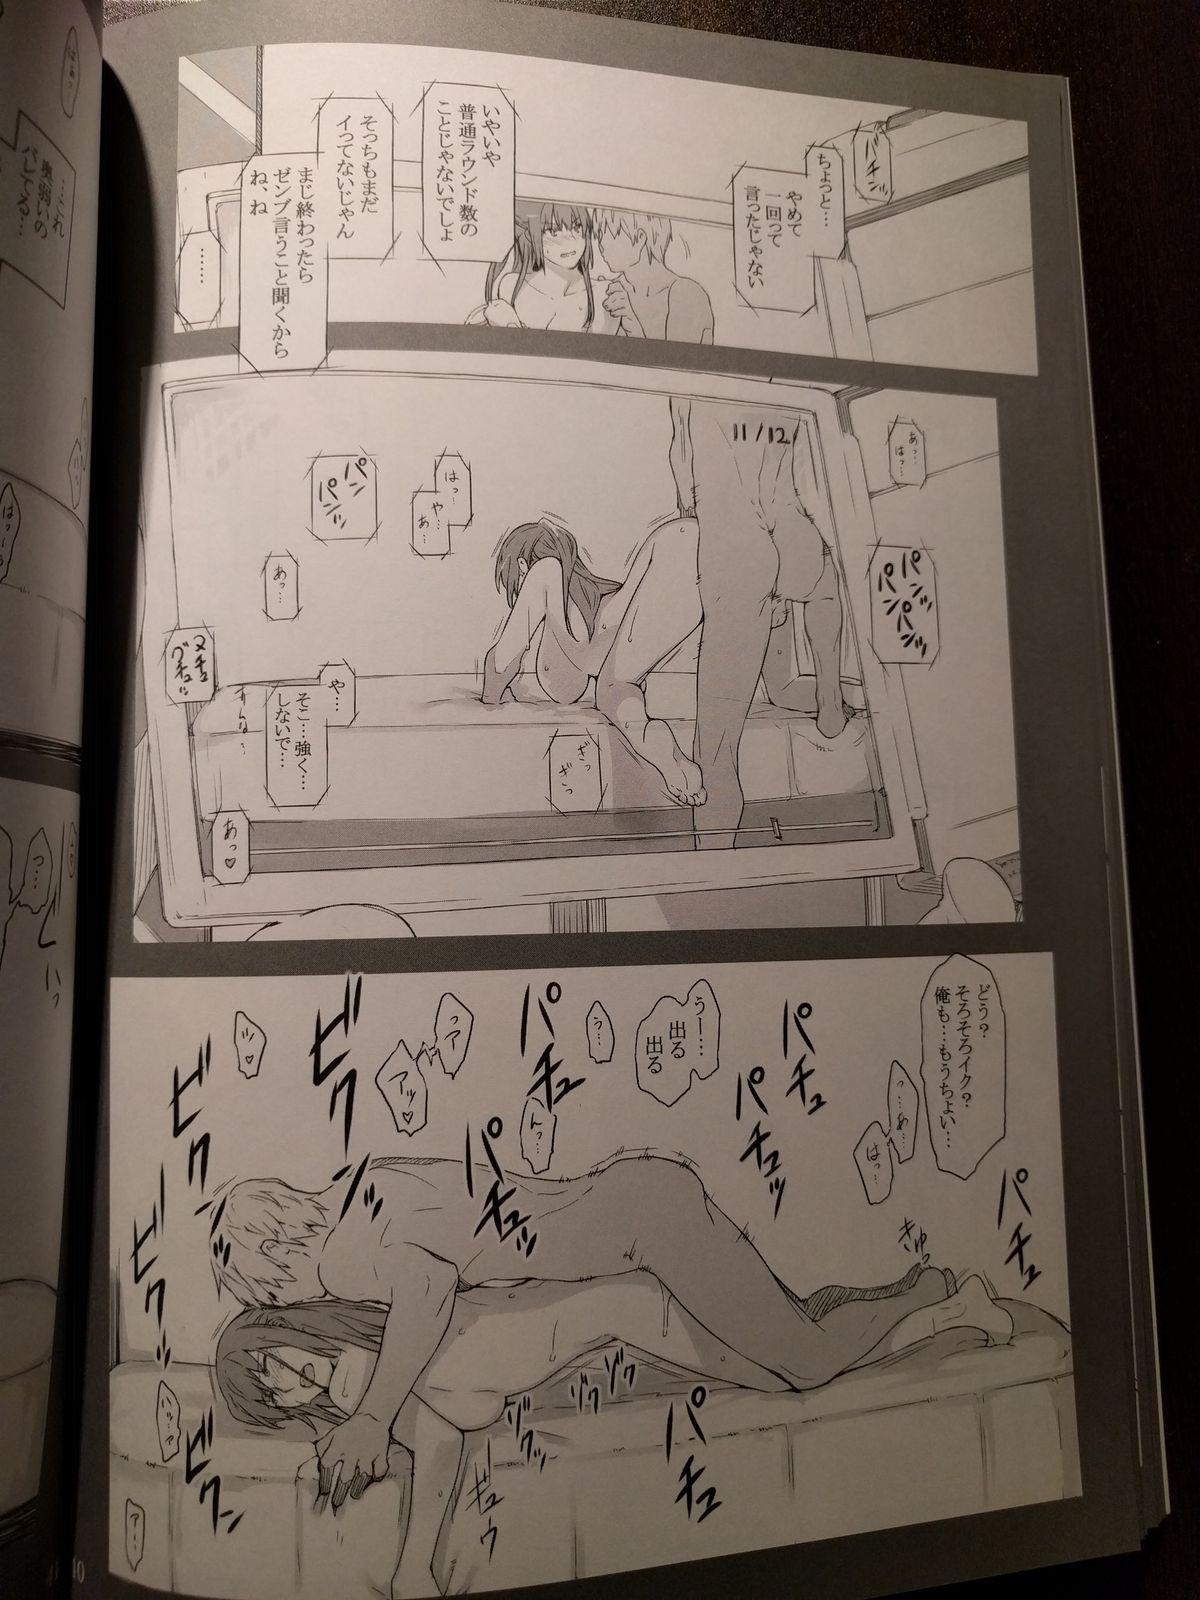 橘さん家ノ男性事情 小説版挿絵+オマケの本 page 27 onward 13